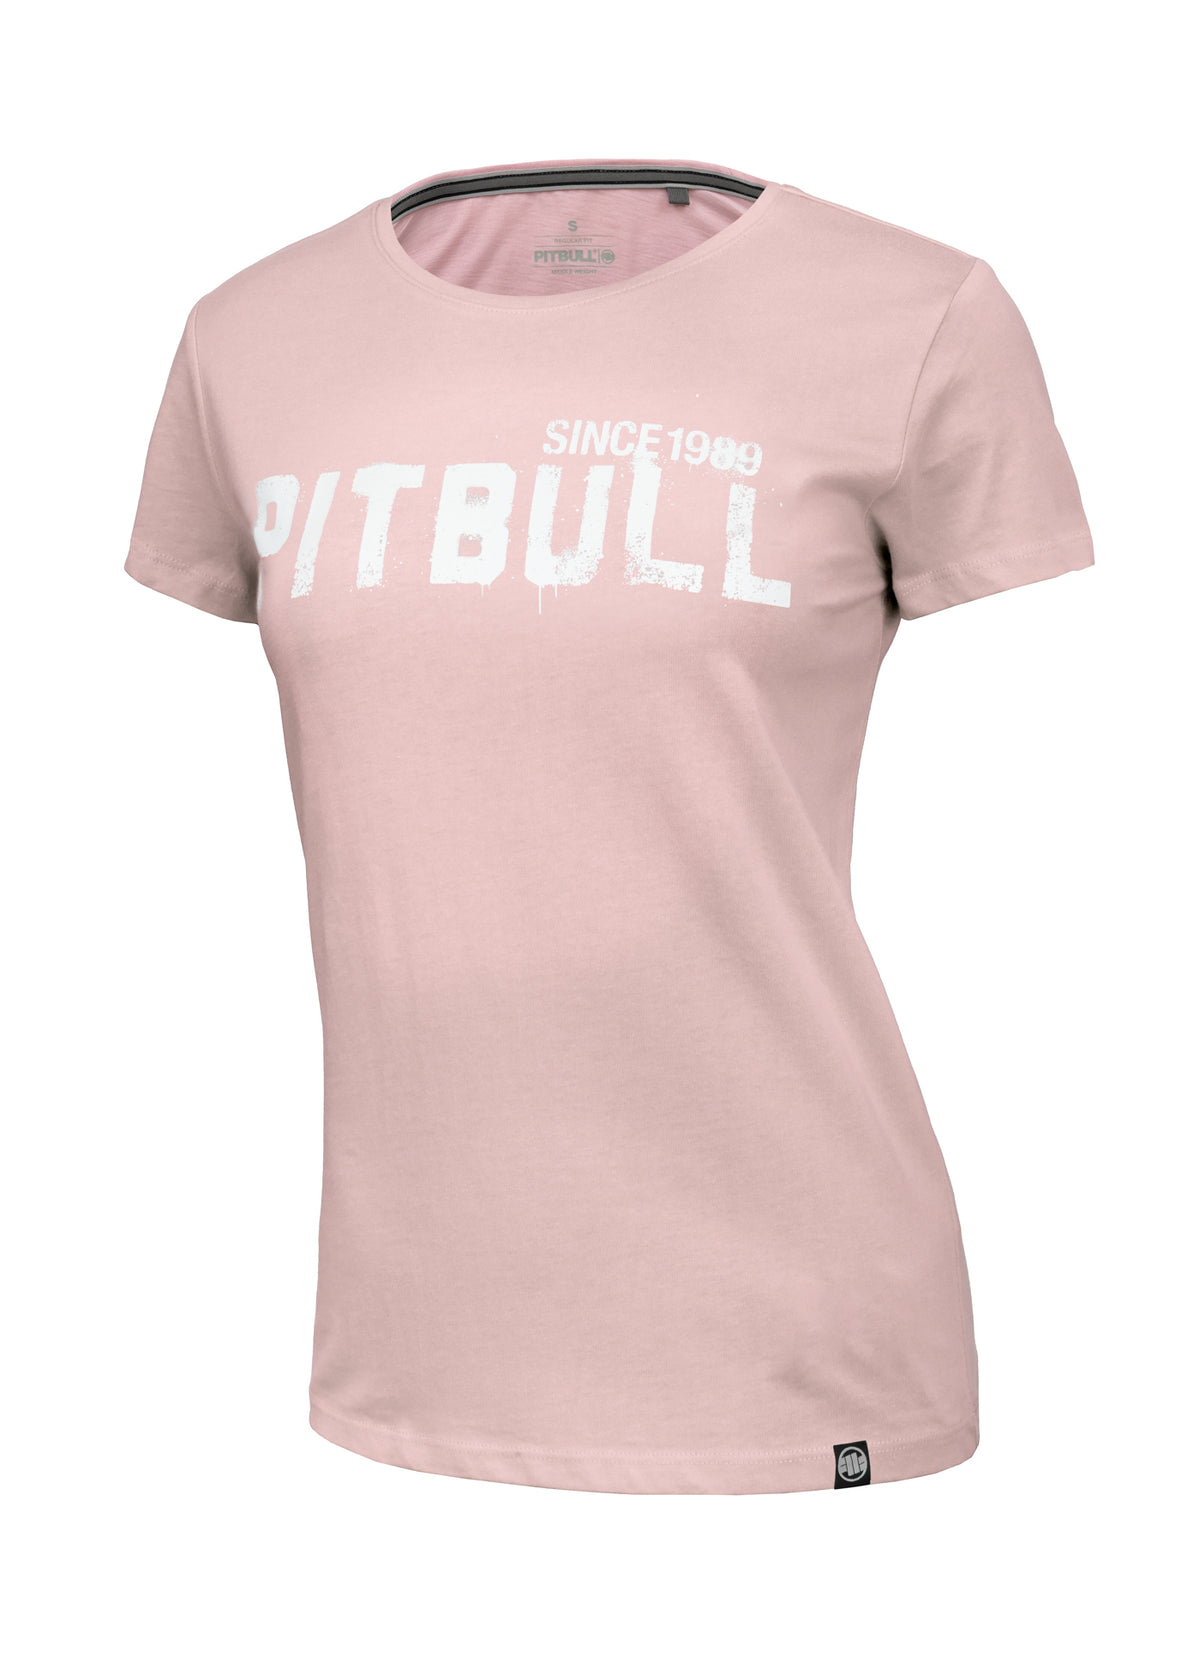 GRAFITTI REGULAR Pink T-shirt - Pitbullstore.eu